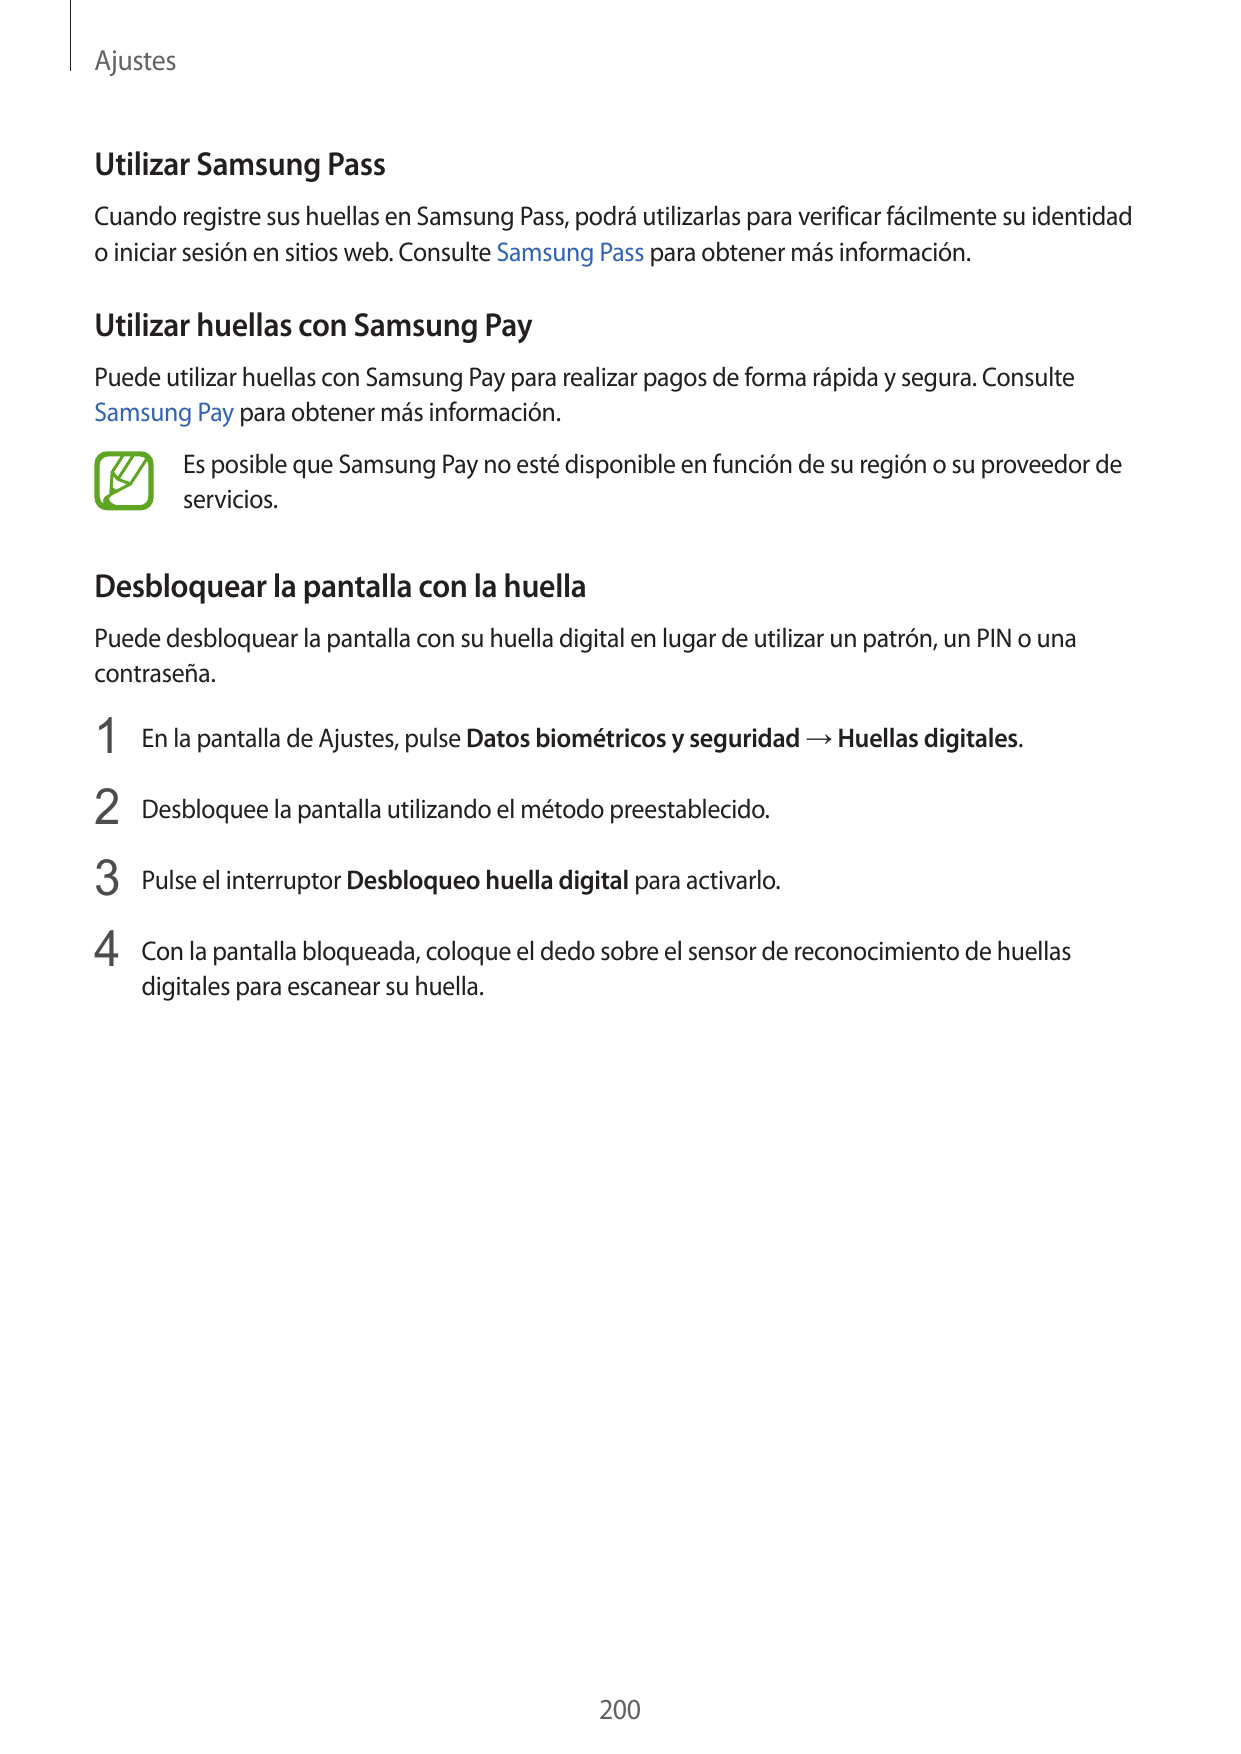 AjustesUtilizar Samsung PassCuando registre sus huellas en Samsung Pass, podrá utilizarlas para verificar fácilmente su identida